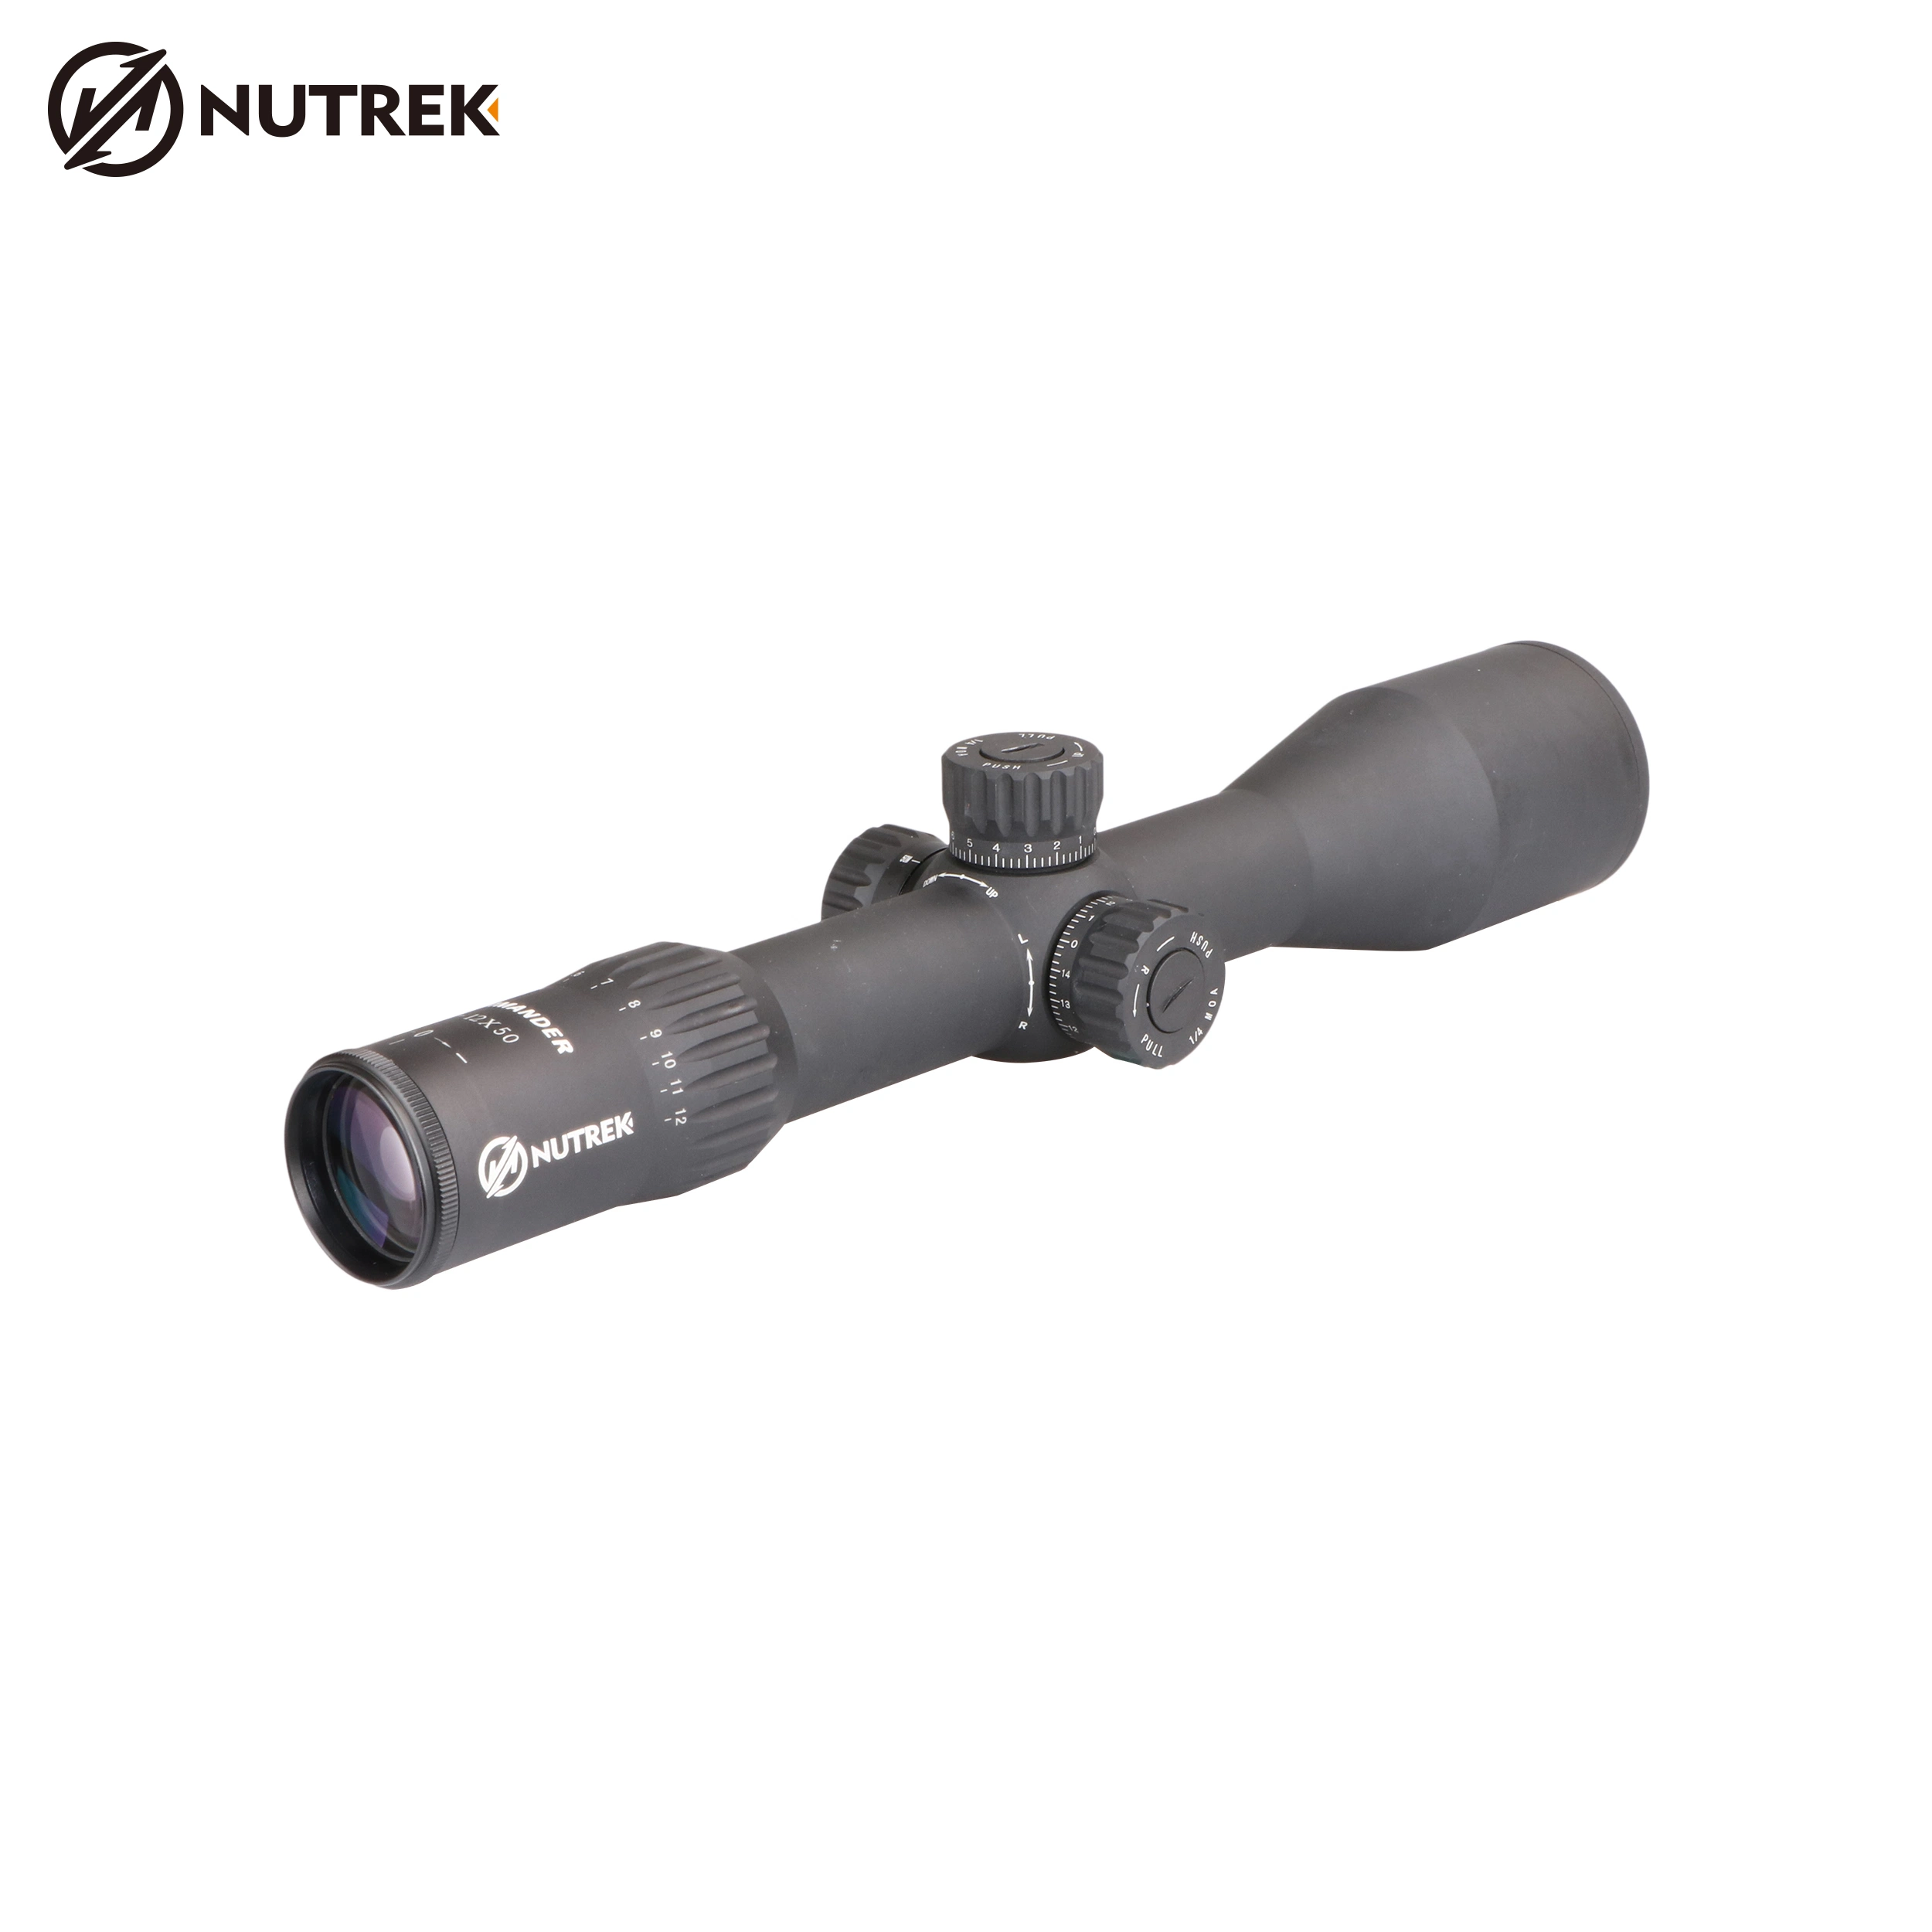 Nutrek Optics 3-12X50 First Focal Plane Waterproof Riflescope